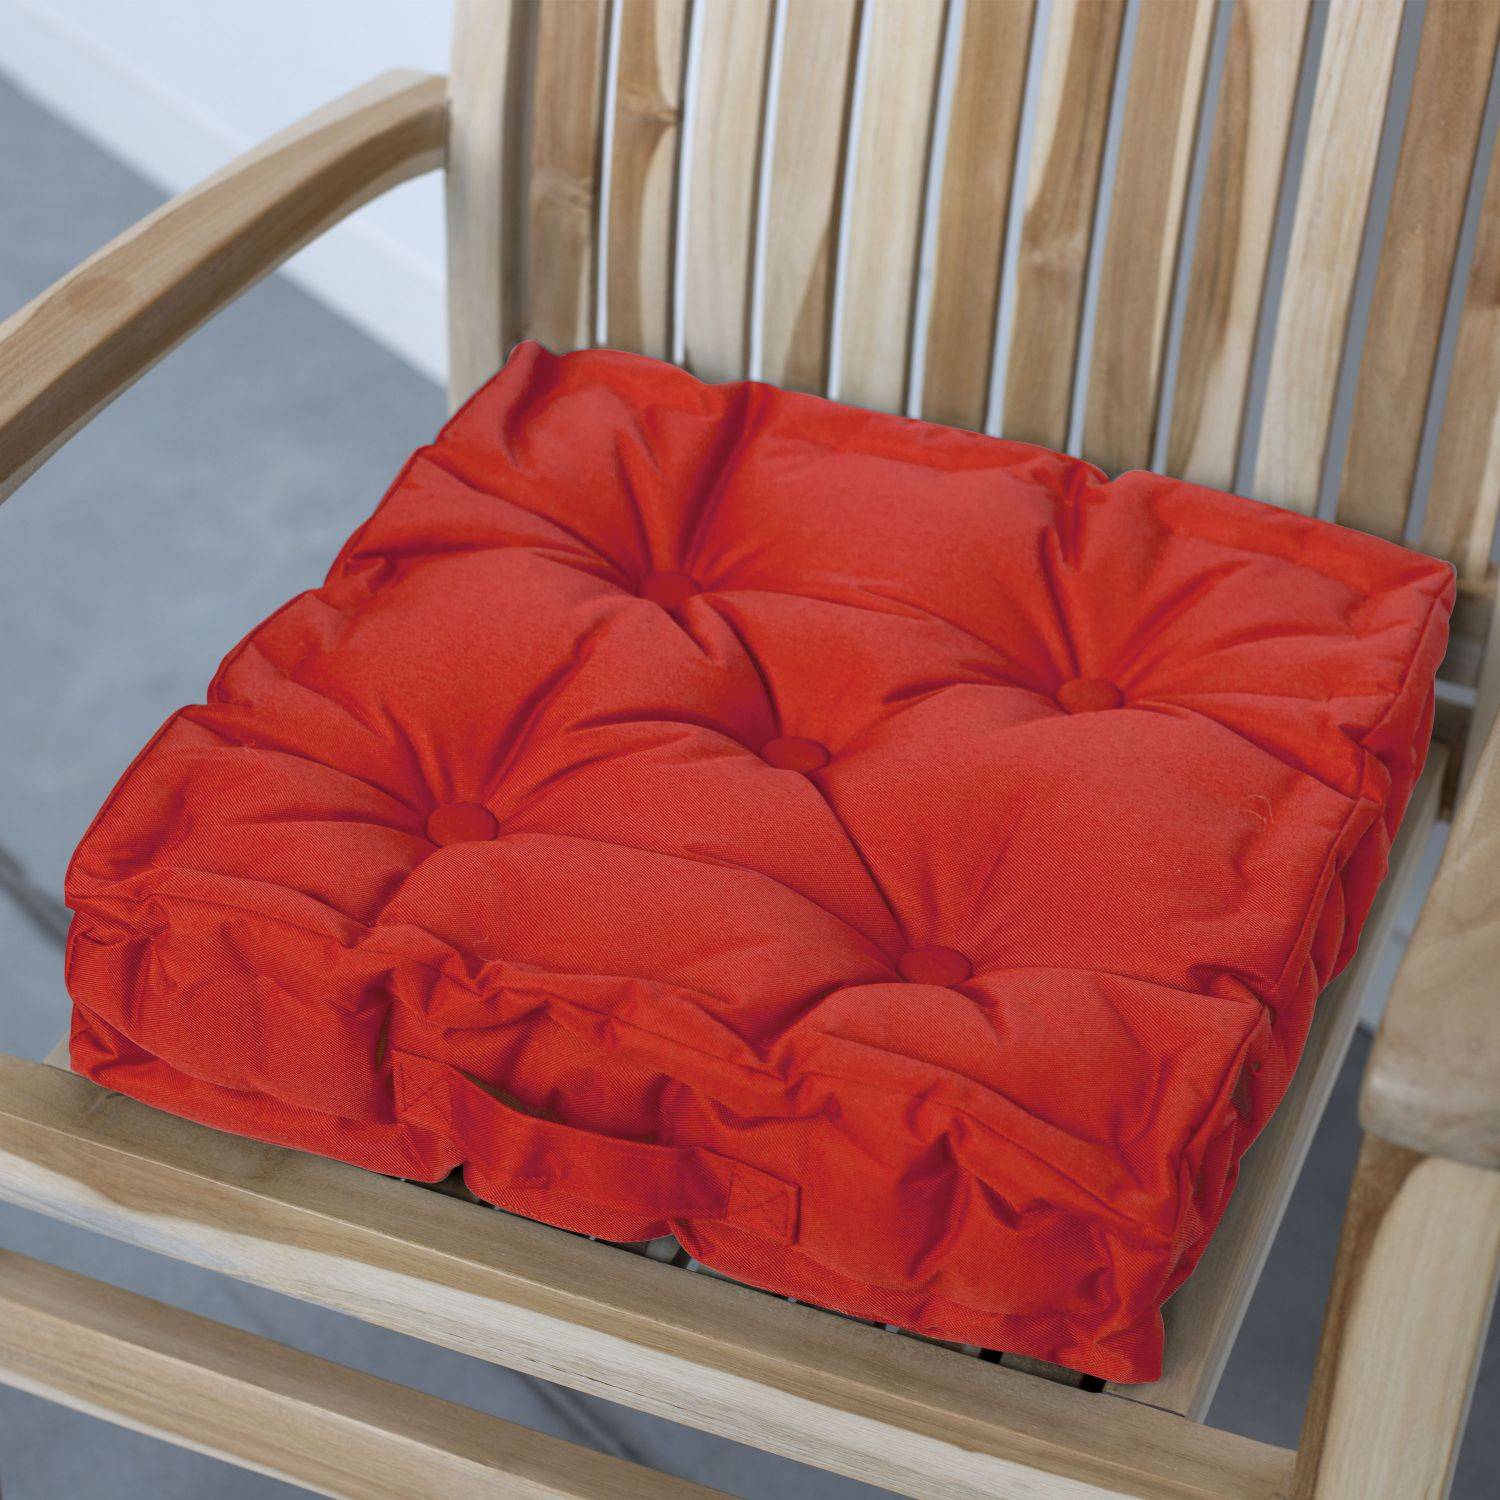 Coussin de sol matelassé – 40 x 40 cm – Brik (rouge), assise avec poignée de transport, boutons Photo2